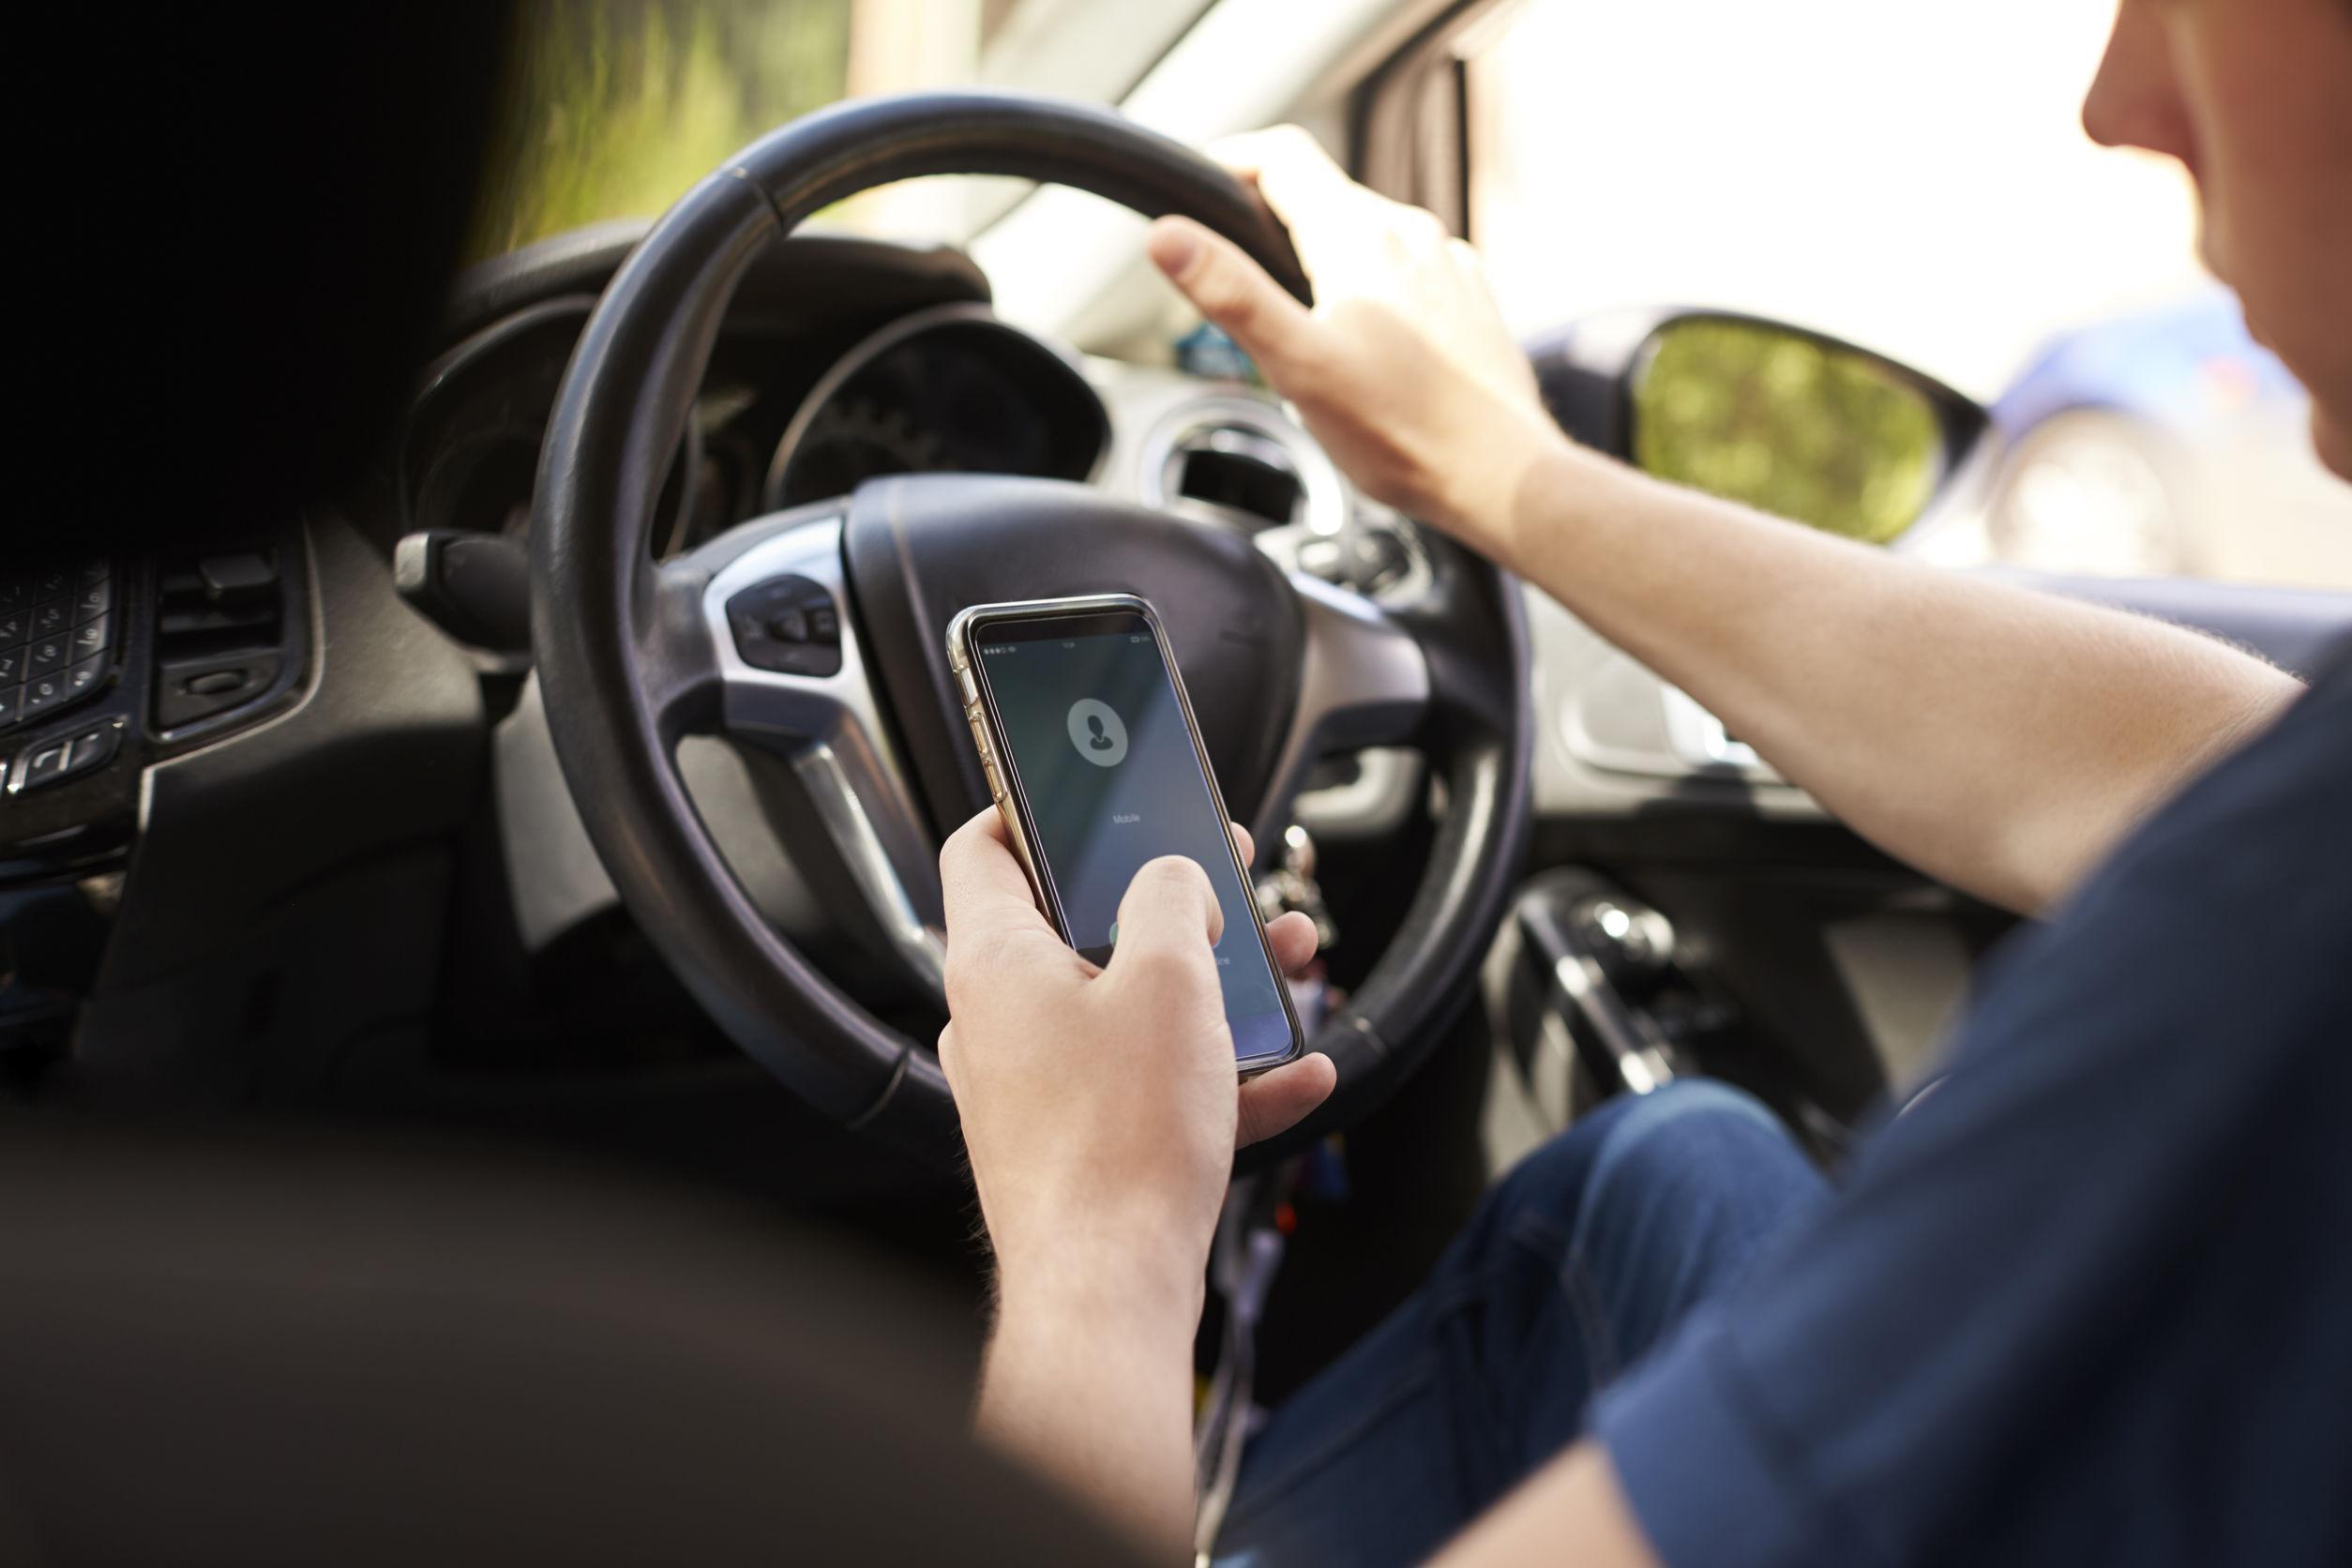 Cellulare alla guida: 1 giovane su 5 ammette di usare i social